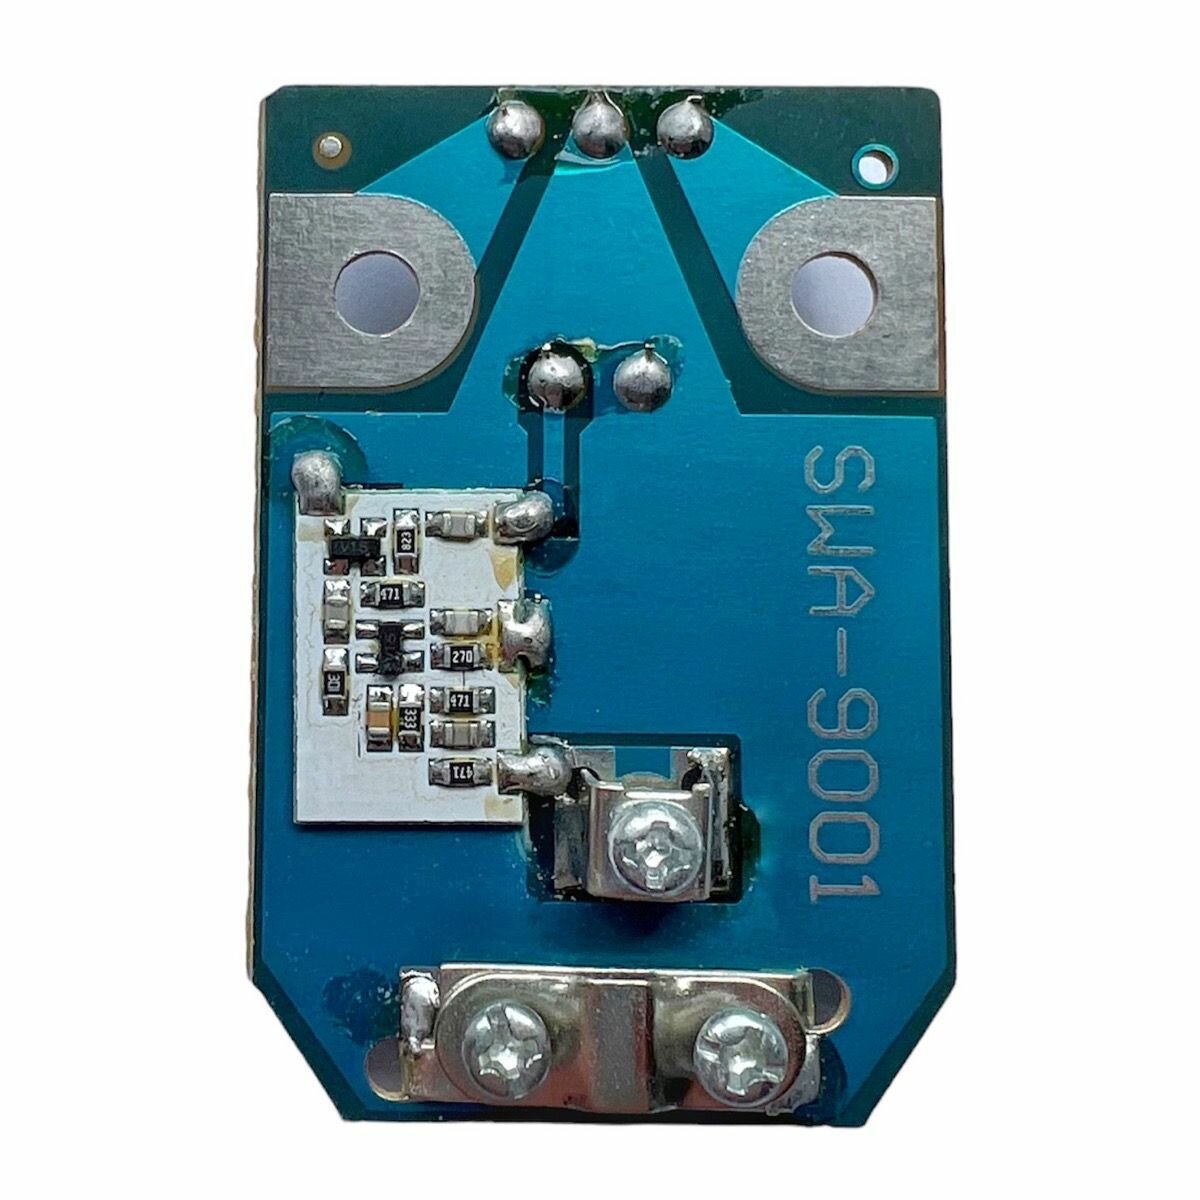 Комплект Усилитель для антенны SWA-9001 Ceramic (усиление 42-54дБ, питание - 12В) + Блок питания для телевизионных антенн с сепаратором 12В